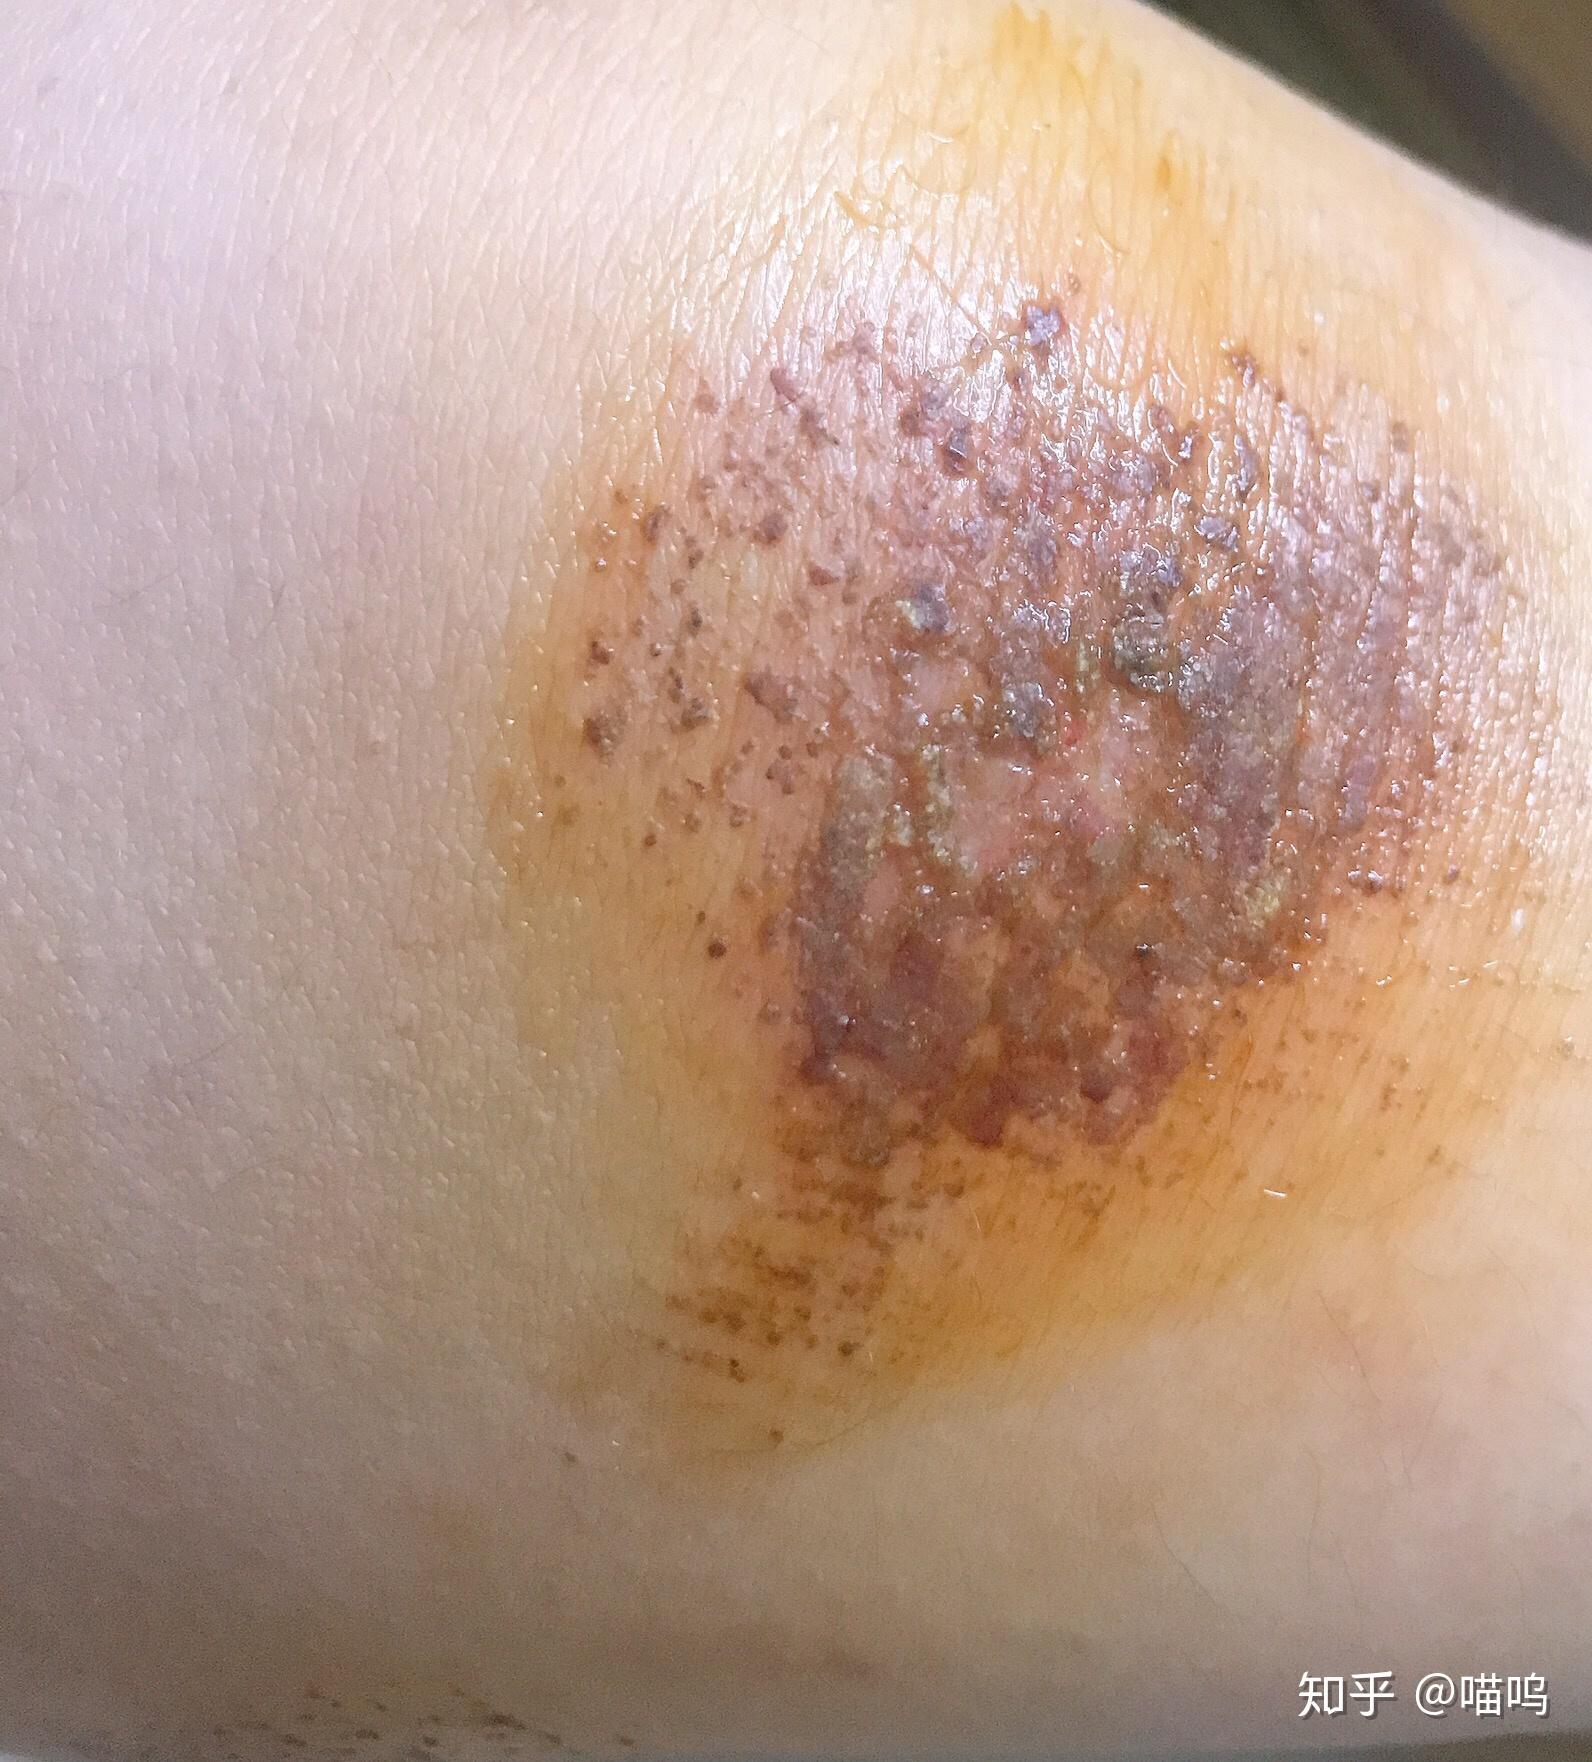 膝盖摔伤,抹了碘伏结痂后如何防止留疤?